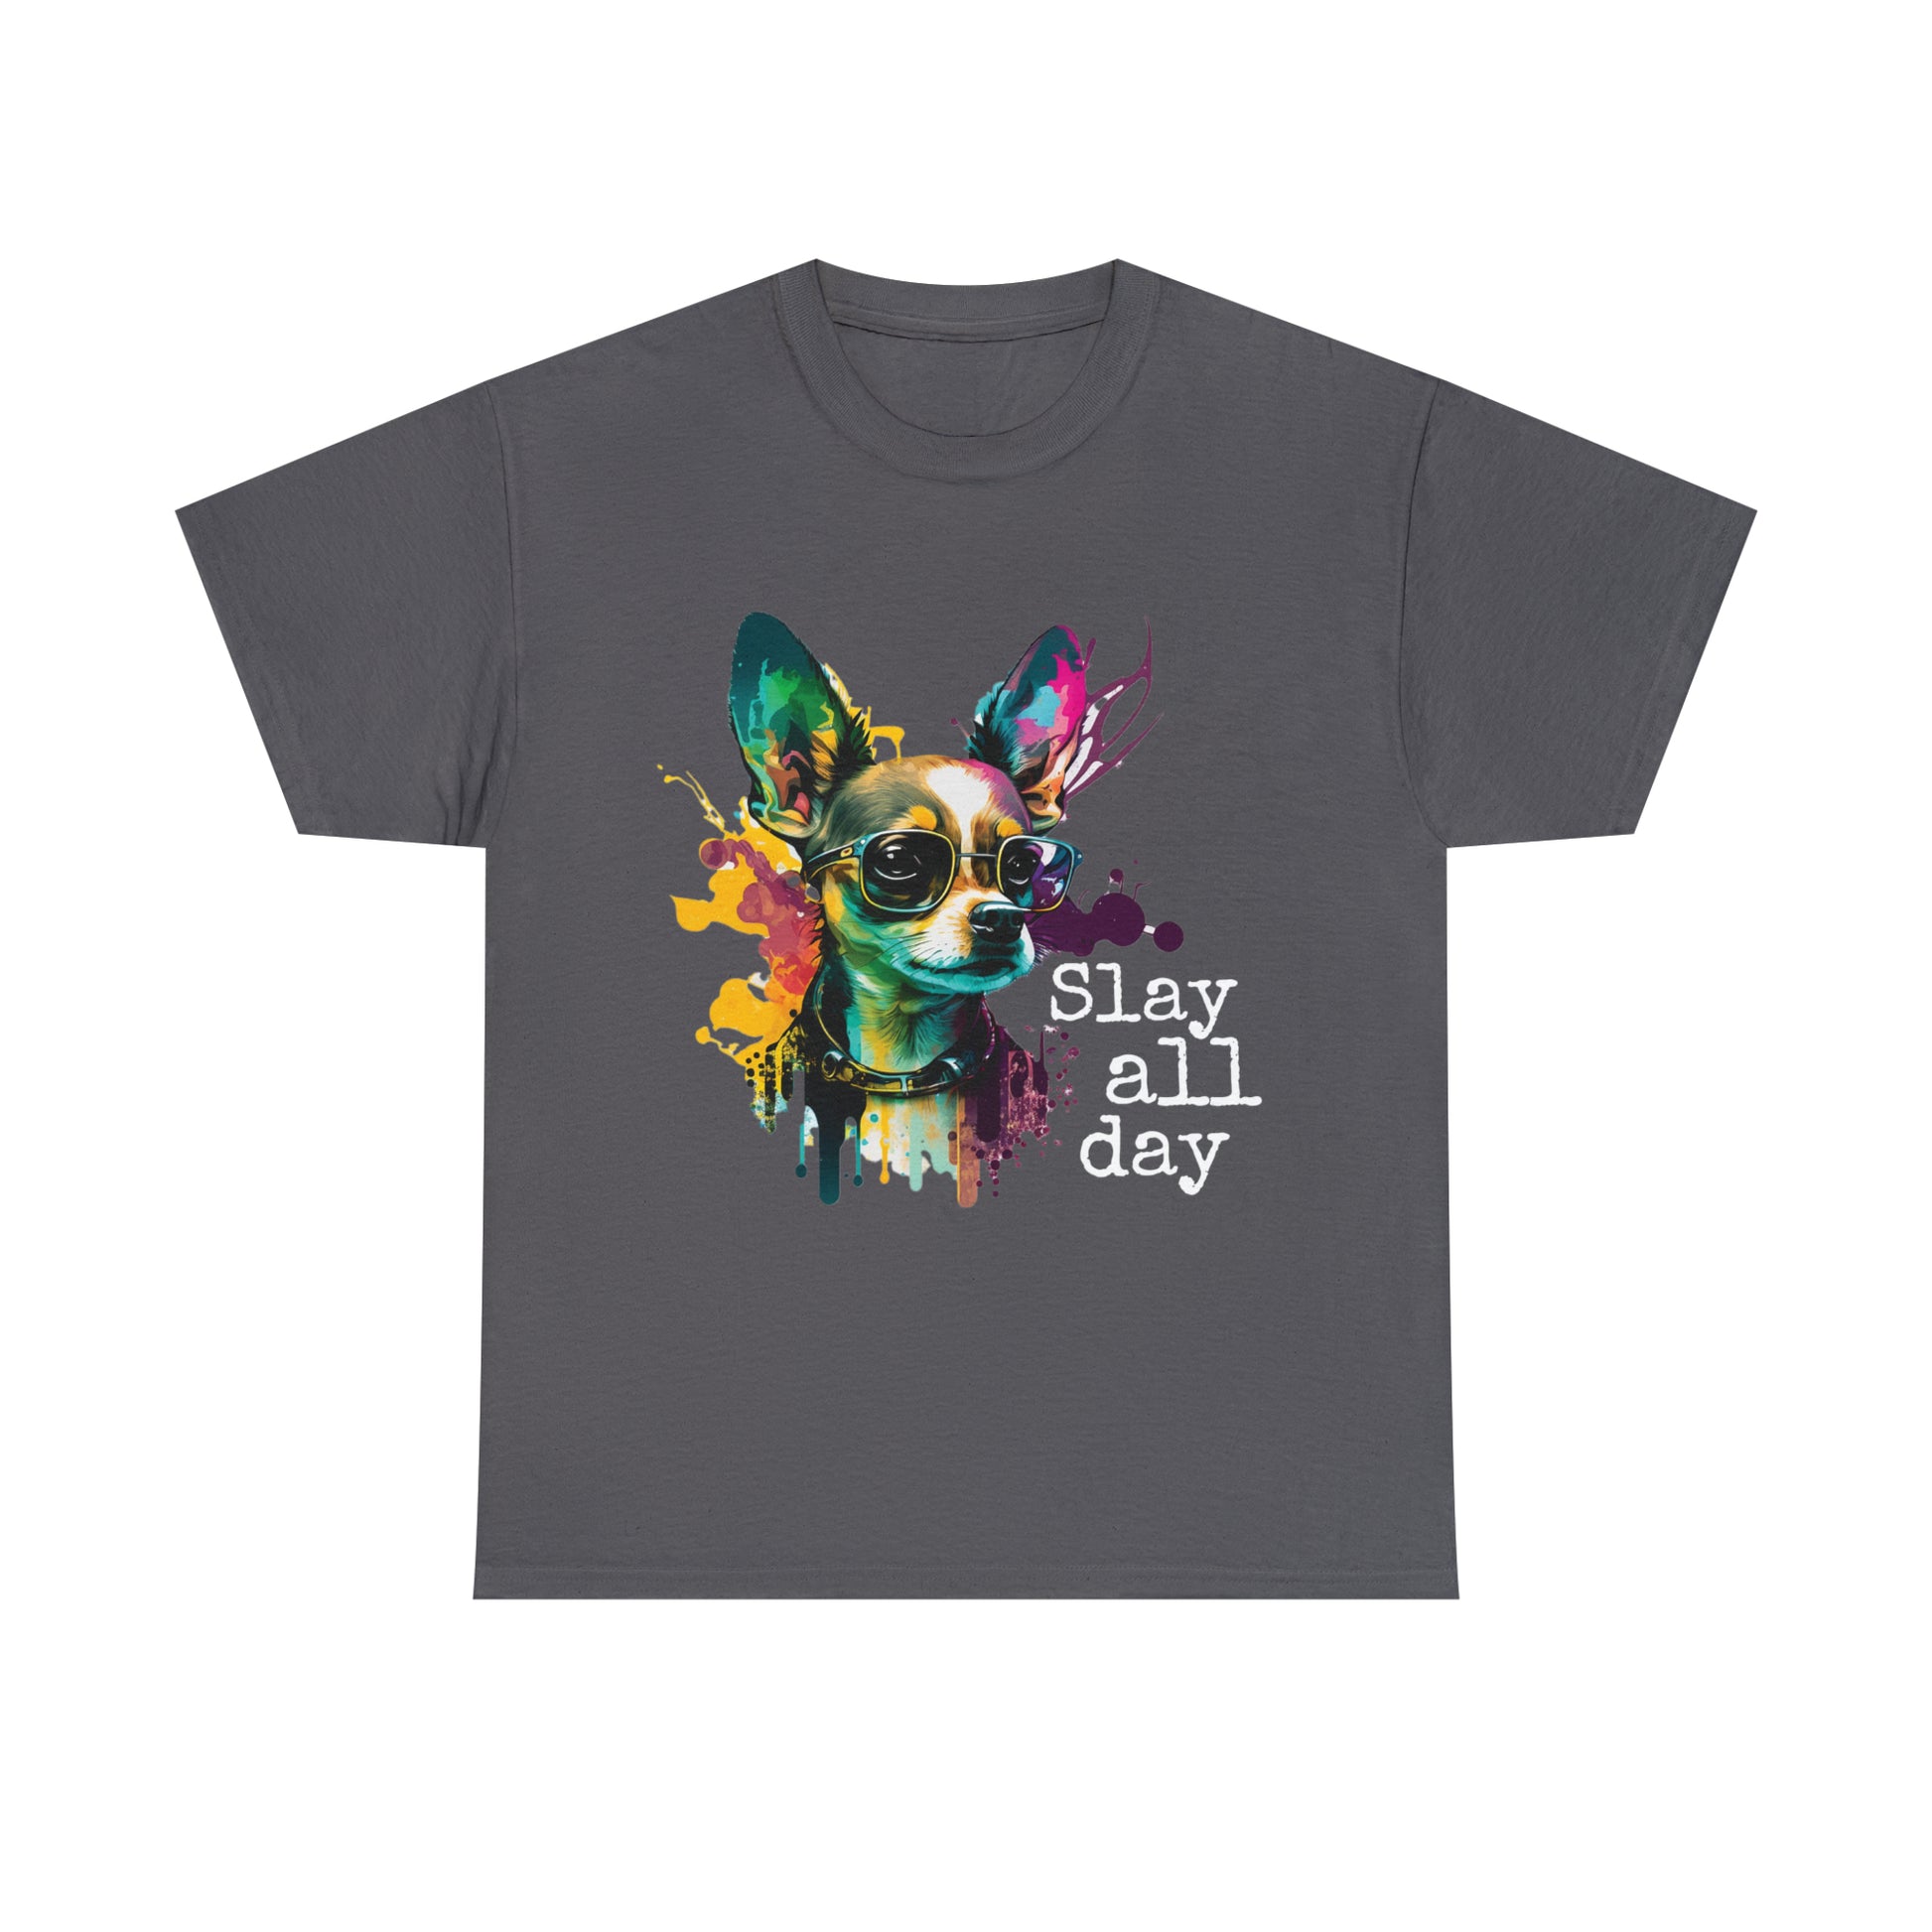 Chihuahua Slay All Day shirt